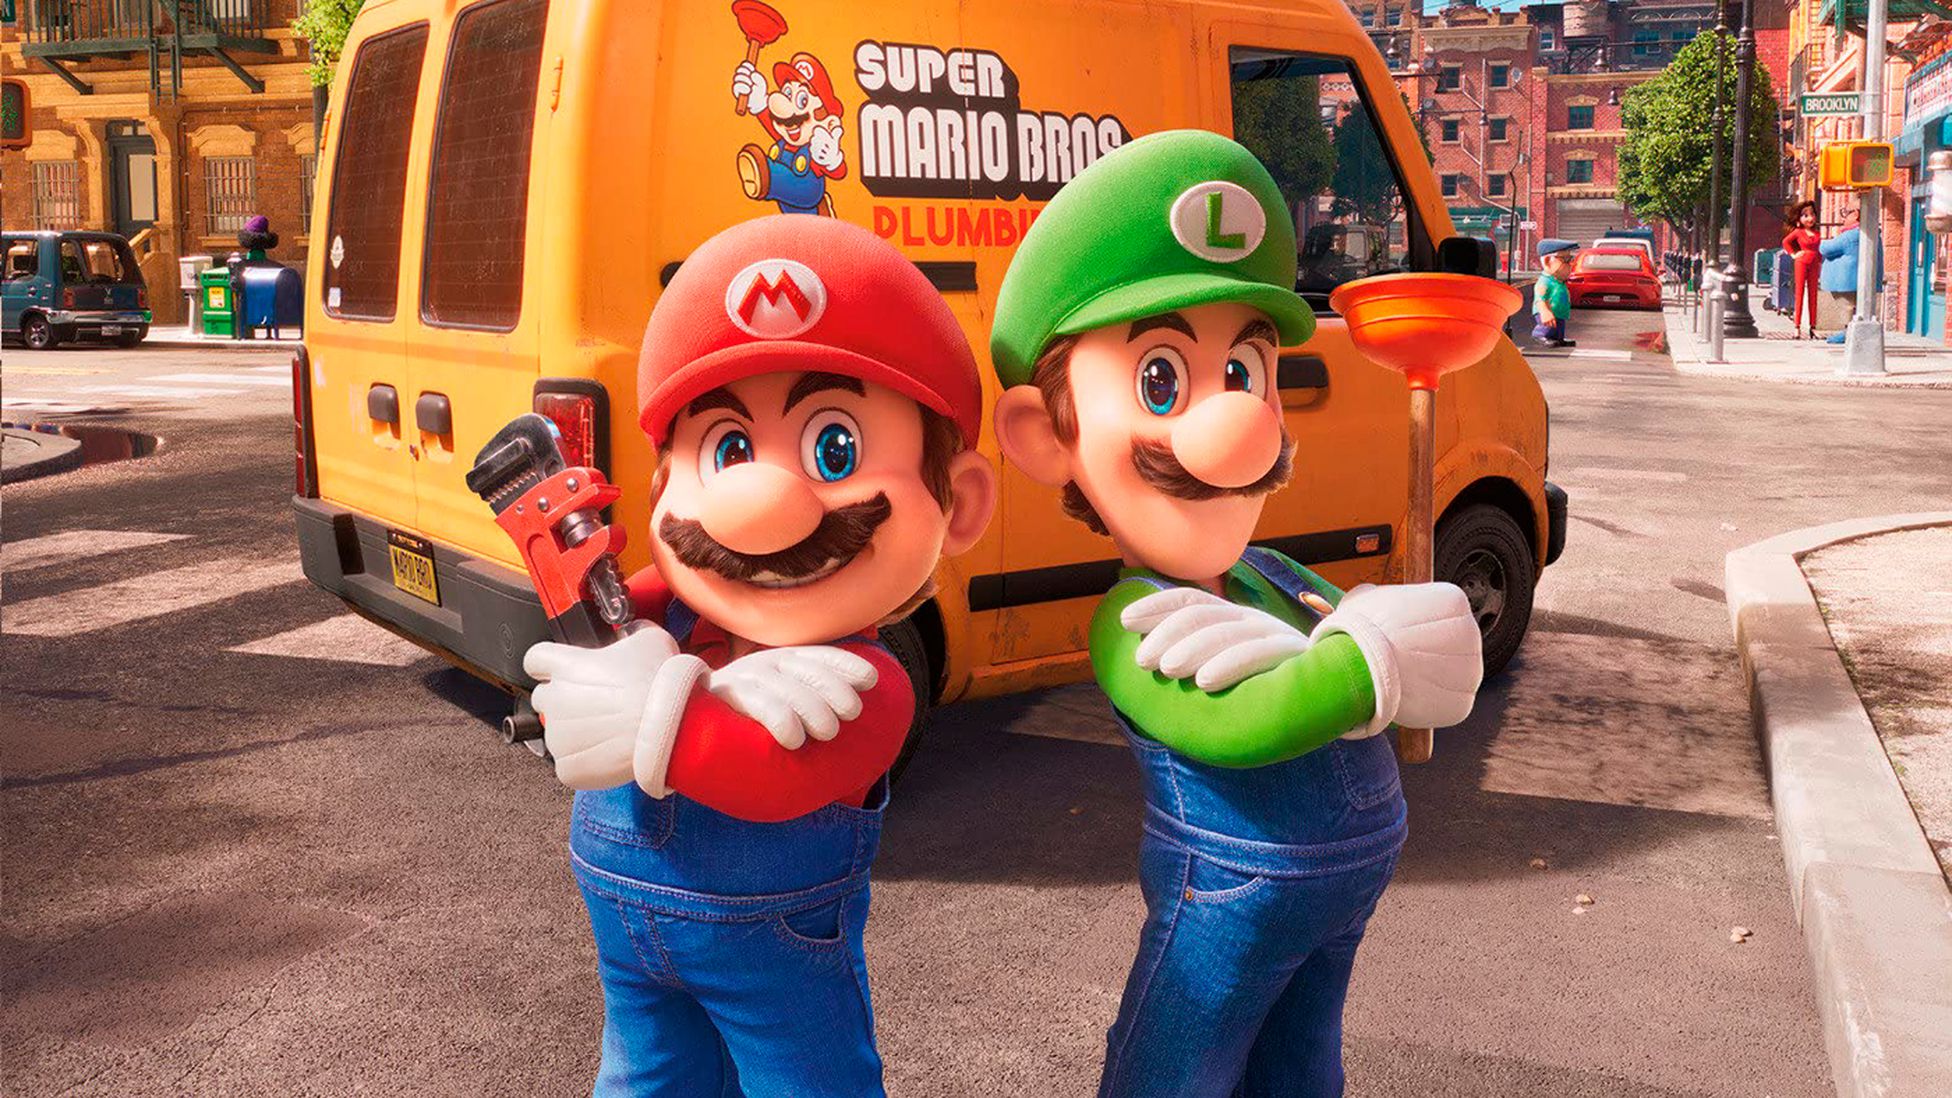 Super Mario Bros. (1993) - Mario Brothers meet Toad 